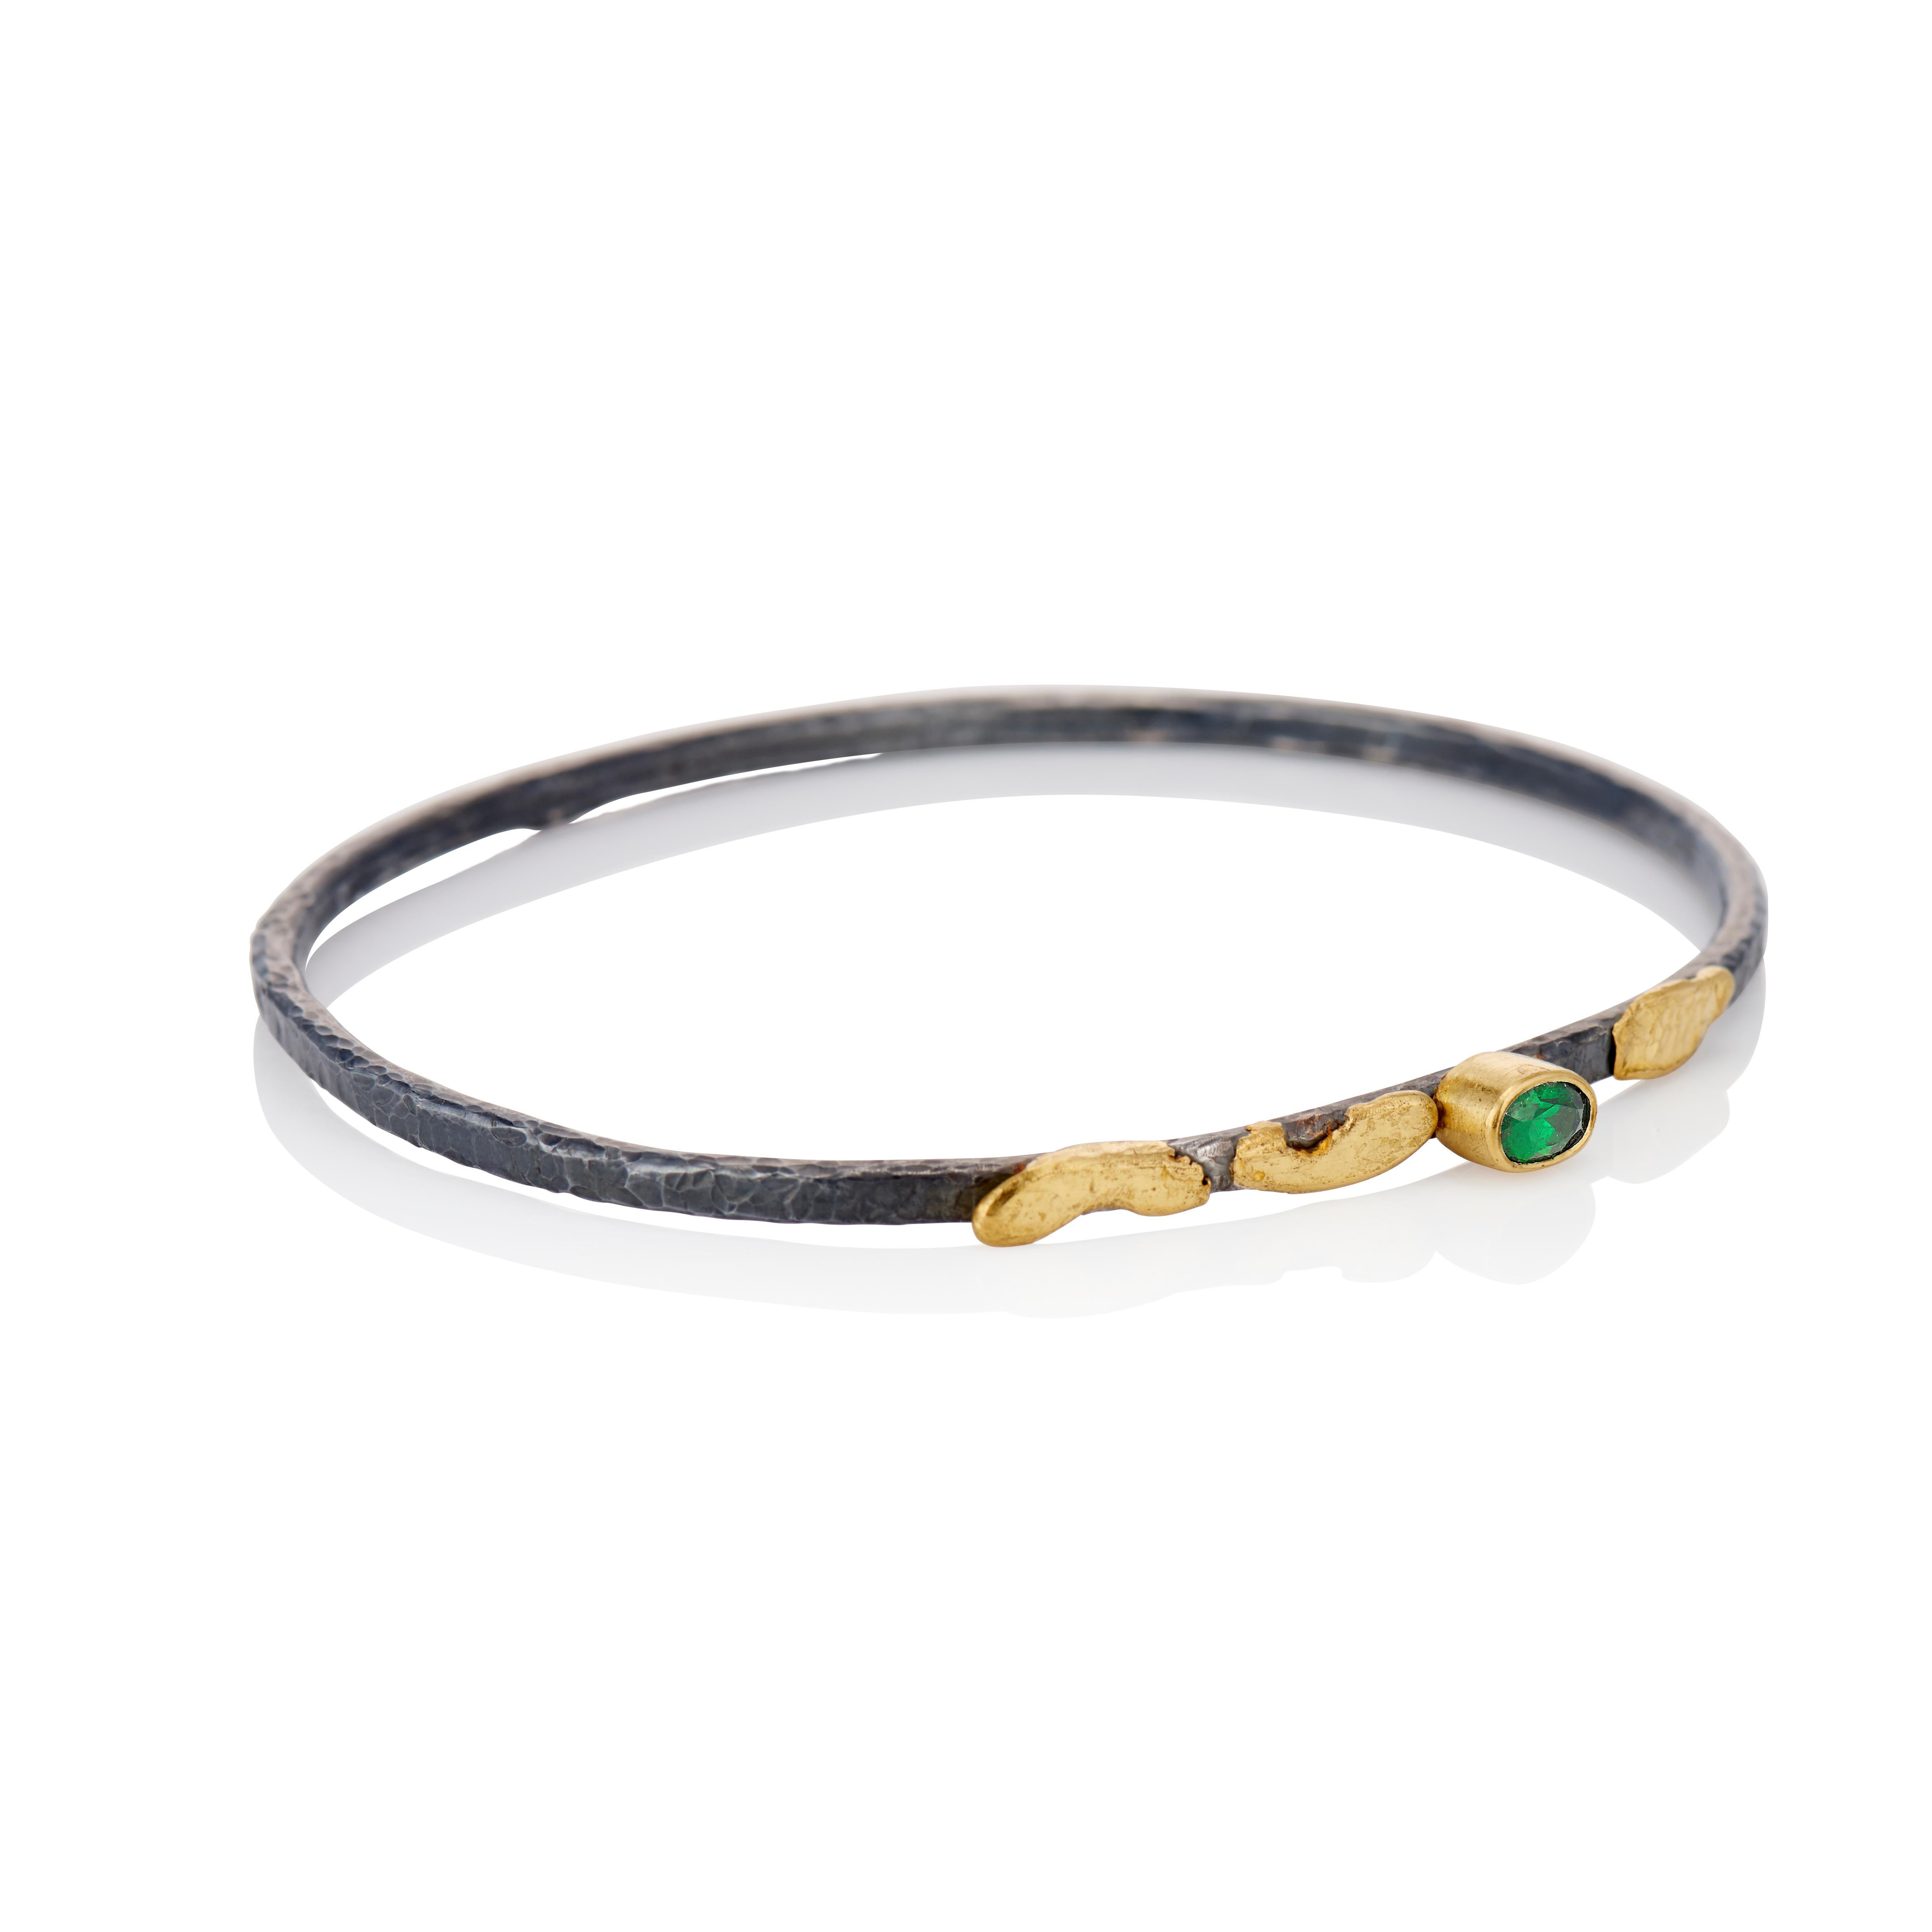 Oval Cut Tsavorite Green Garnet Bangle Bracelet in 22 Karat Yellow Gold & Sterling Silver For Sale